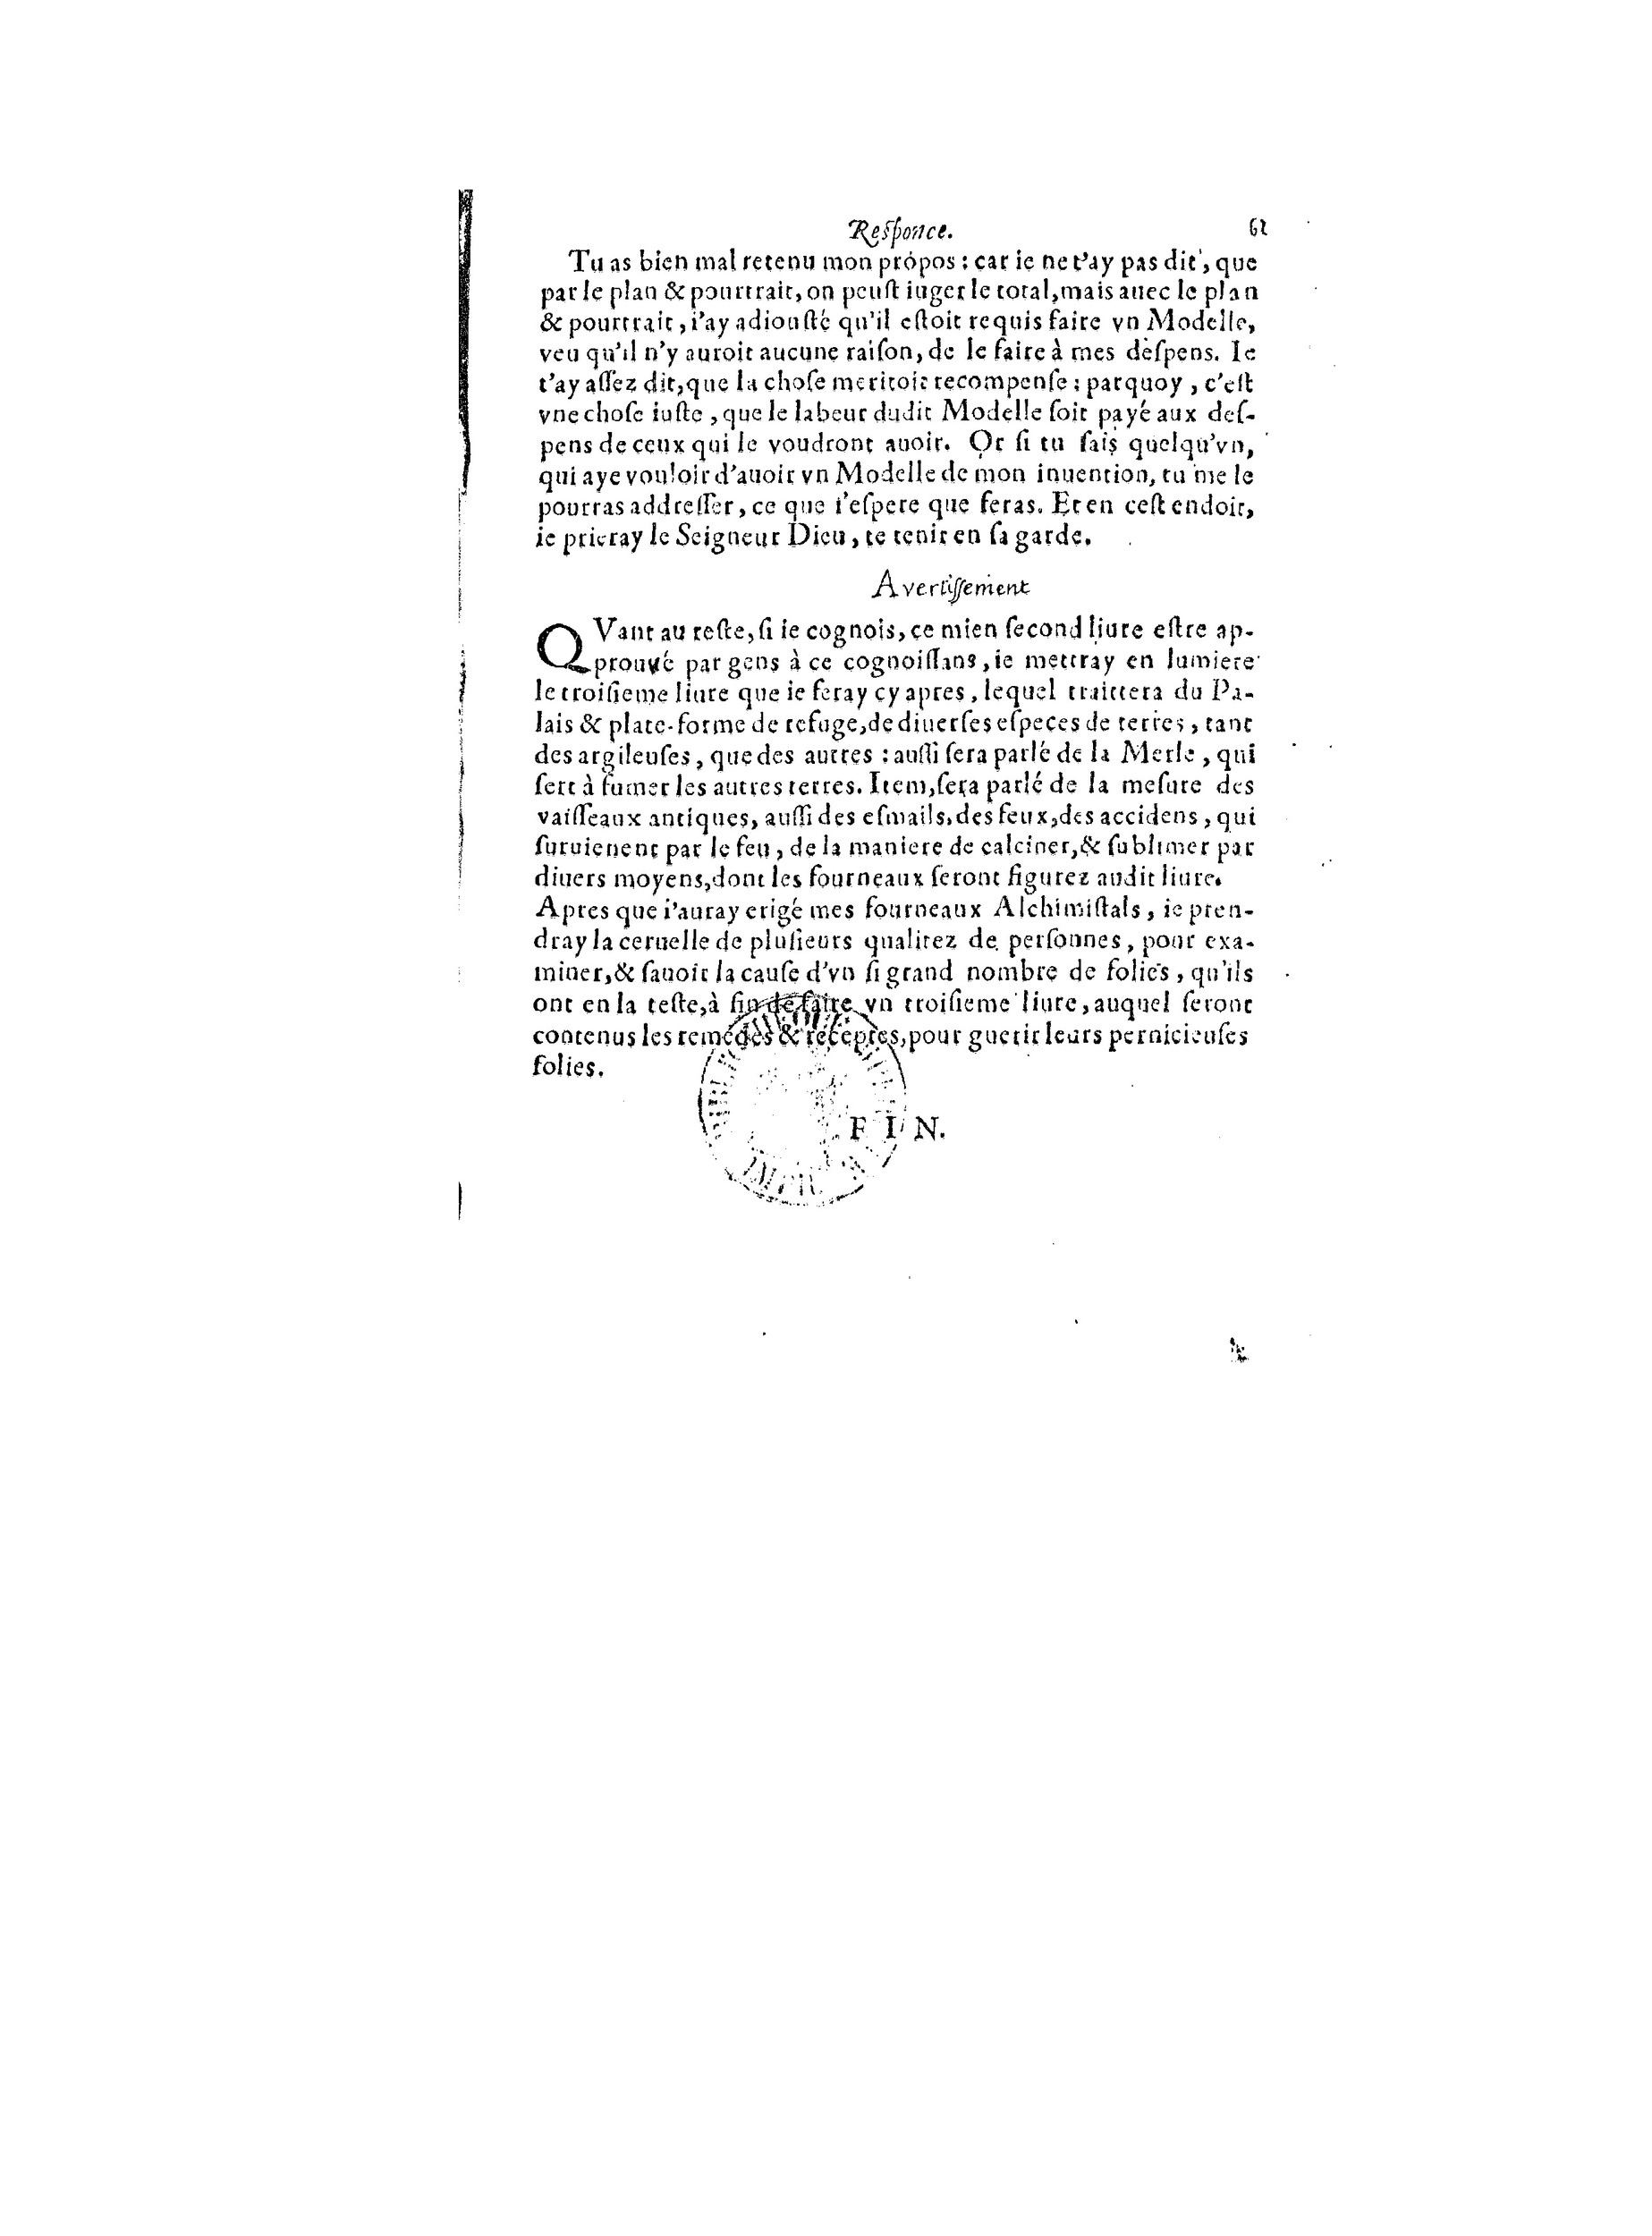 1563 Recepte veritable Berton_BNF_Page_130.jpg